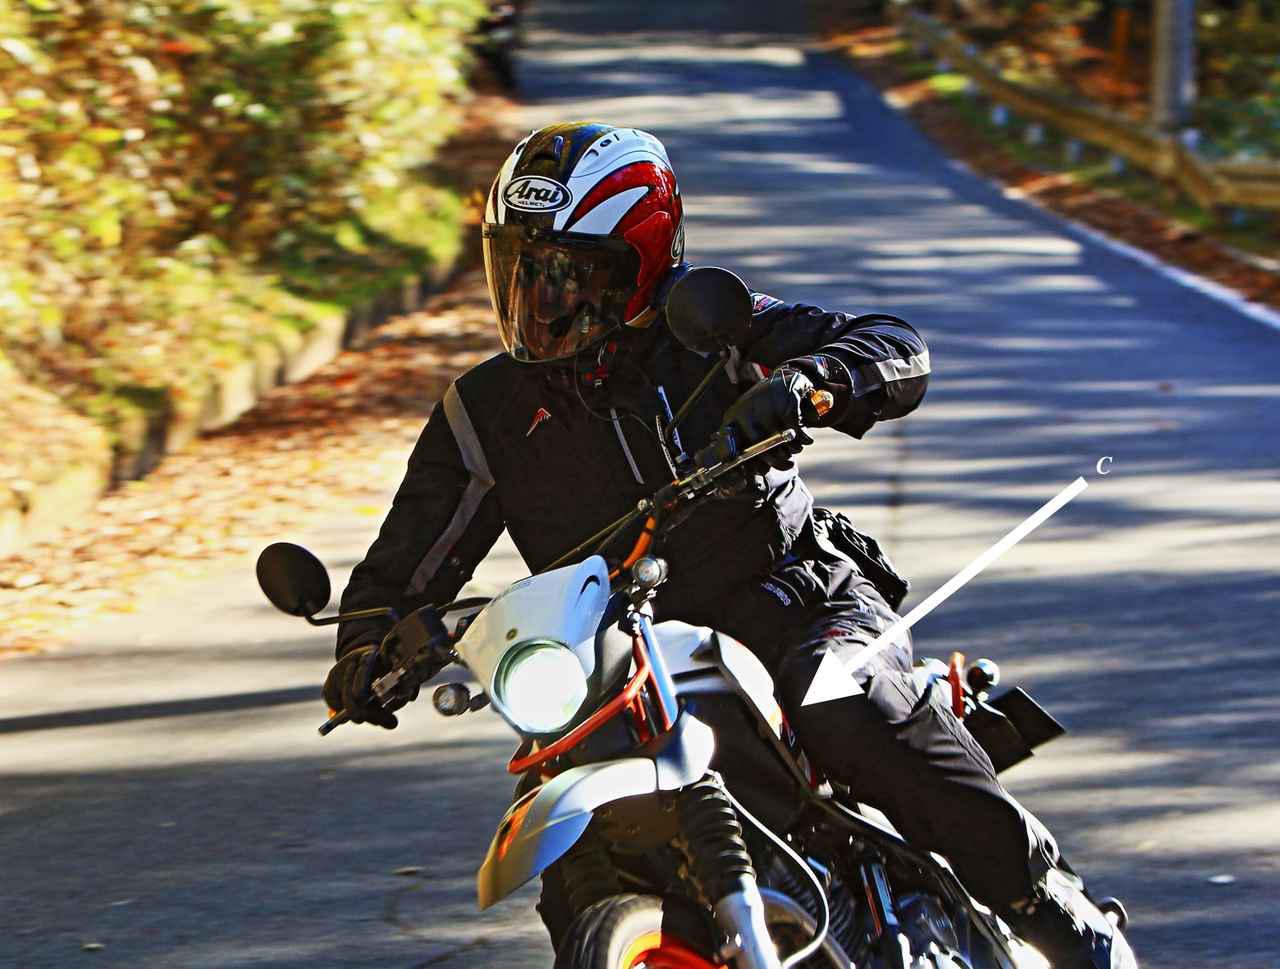 ライディング テクニックを上達させる 4つのアクション とは バイクの運転のコツと安全で楽しい乗り方を解説 柏秀樹持論 第7回 Webオートバイ 自動車情報サイト 新車 中古車 Carview